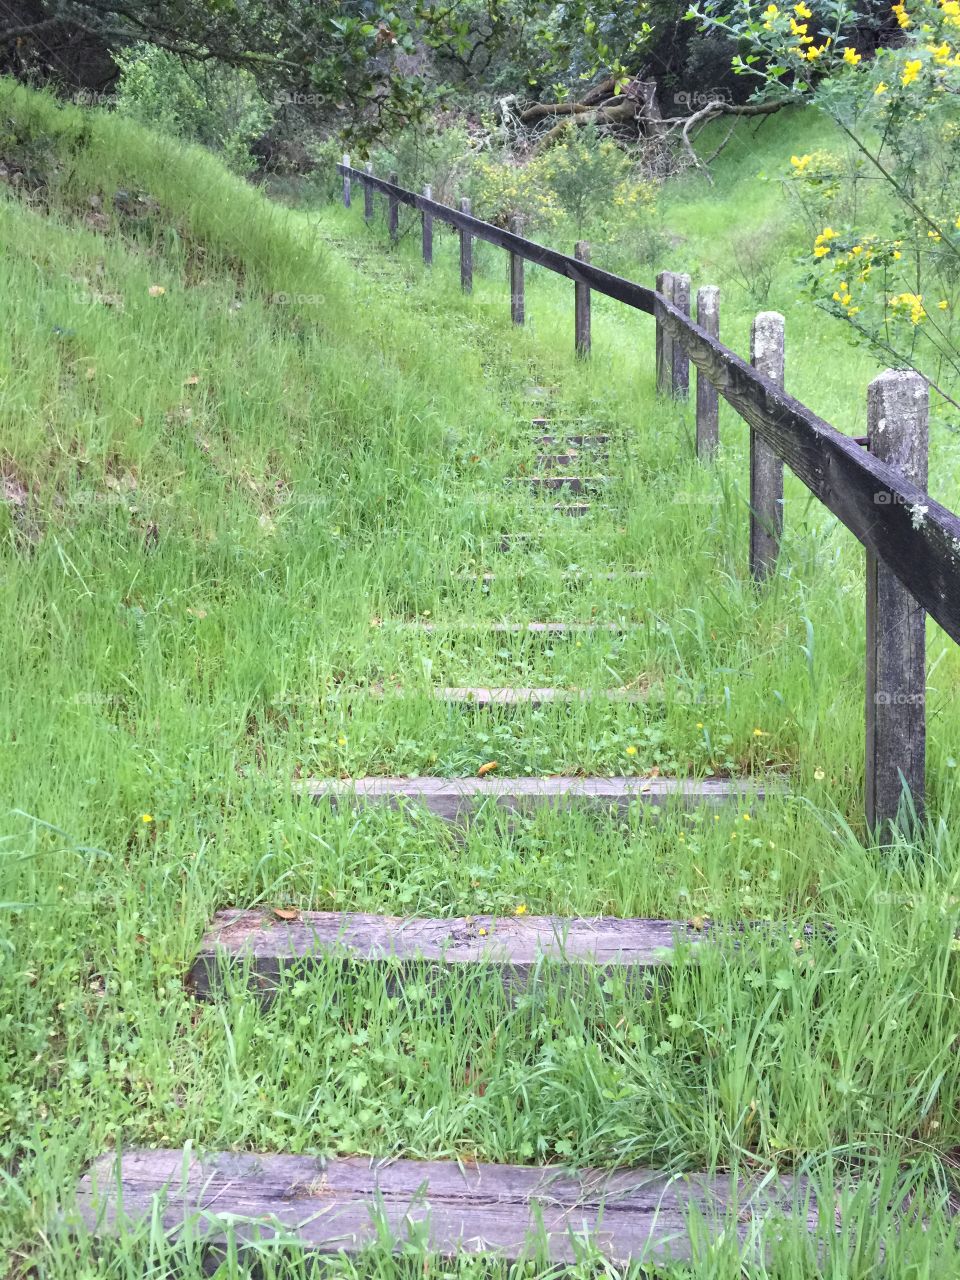 Grassy Stair